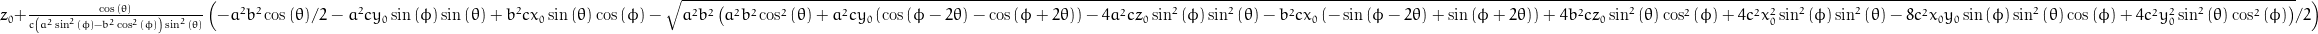 z_{0} + \frac{\cos{\left (\theta \right )}}{c \left(a^{2} \sin^{2}{\left (\phi \right )} - b^{2} \cos^{2}{\left (\phi \right )}\right) \sin^{2}{\left (\theta \right )}} \left(- \frac{a^{2} b^{2}}{2} \cos{\left (\theta \right )} - a^{2} c y_{0} \sin{\left (\phi \right )} \sin{\left (\theta \right )} + b^{2} c x_{0} \sin{\left (\theta \right )} \cos{\left (\phi \right )} - \frac{1}{2} \sqrt{a^{2} b^{2} \left(a^{2} b^{2} \cos^{2}{\left (\theta \right )} + a^{2} c y_{0} \left(\cos{\left (\phi - 2 \theta \right )} - \cos{\left (\phi + 2 \theta \right )}\right) - 4 a^{2} c z_{0} \sin^{2}{\left (\phi \right )} \sin^{2}{\left (\theta \right )} - b^{2} c x_{0} \left(- \sin{\left (\phi - 2 \theta \right )} + \sin{\left (\phi + 2 \theta \right )}\right) + 4 b^{2} c z_{0} \sin^{2}{\left (\theta \right )} \cos^{2}{\left (\phi \right )} + 4 c^{2} x_{0}^{2} \sin^{2}{\left (\phi \right )} \sin^{2}{\left (\theta \right )} - 8 c^{2} x_{0} y_{0} \sin{\left (\phi \right )} \sin^{2}{\left (\theta \right )} \cos{\left (\phi \right )} + 4 c^{2} y_{0}^{2} \sin^{2}{\left (\theta \right )} \cos^{2}{\left (\phi \right )}\right)}\right)